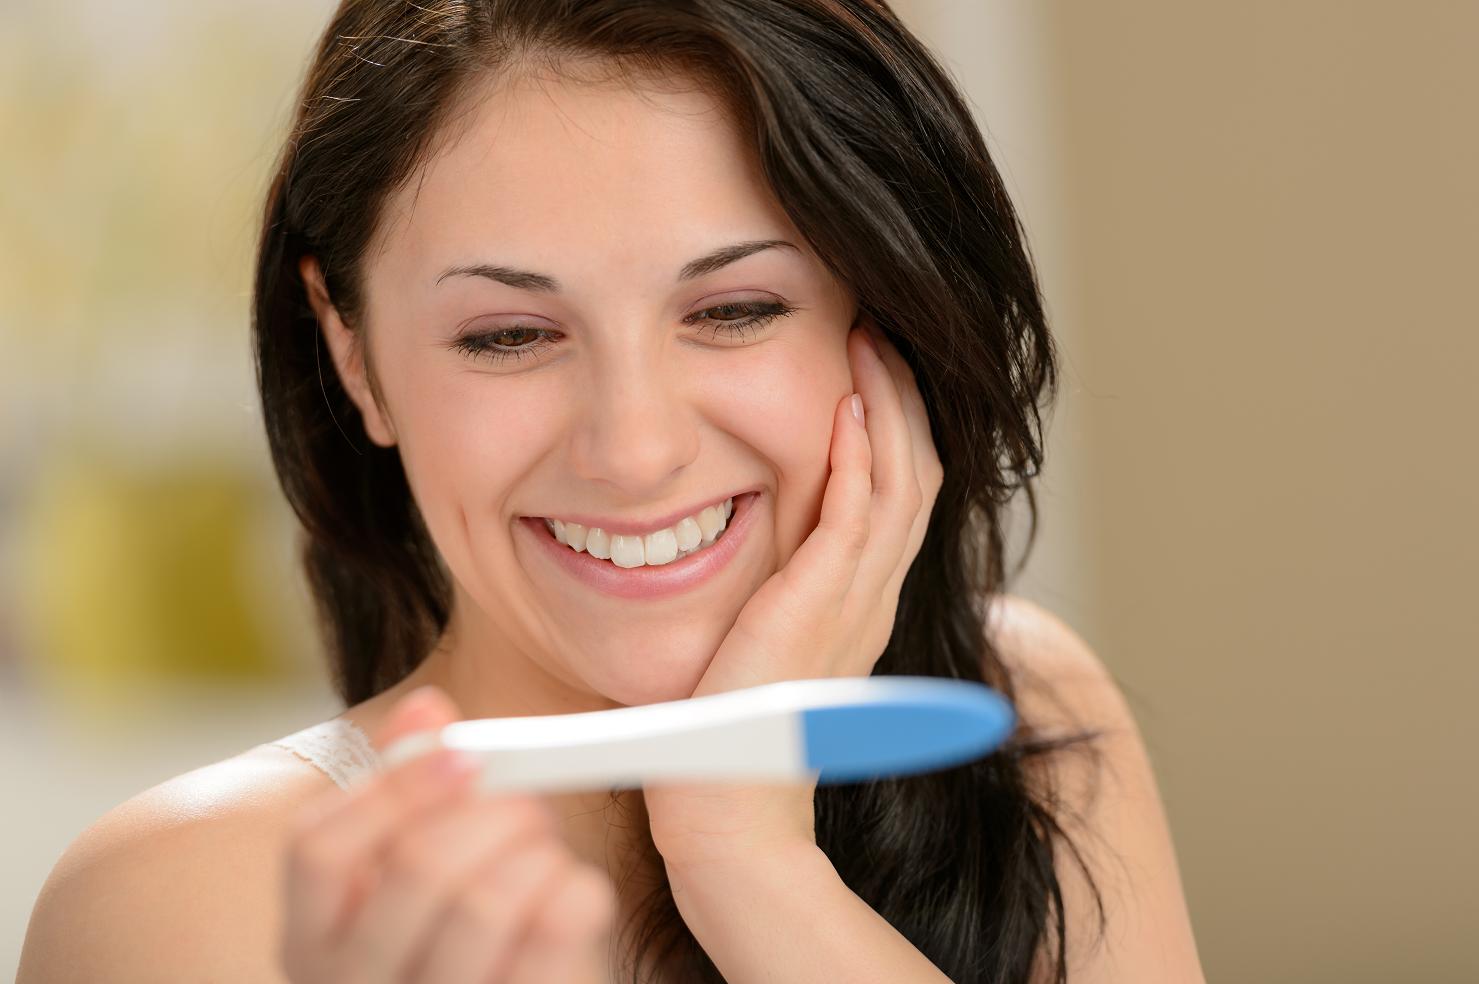 كم يوم بعد الحمل سيظهر الاختبار الحمل؟